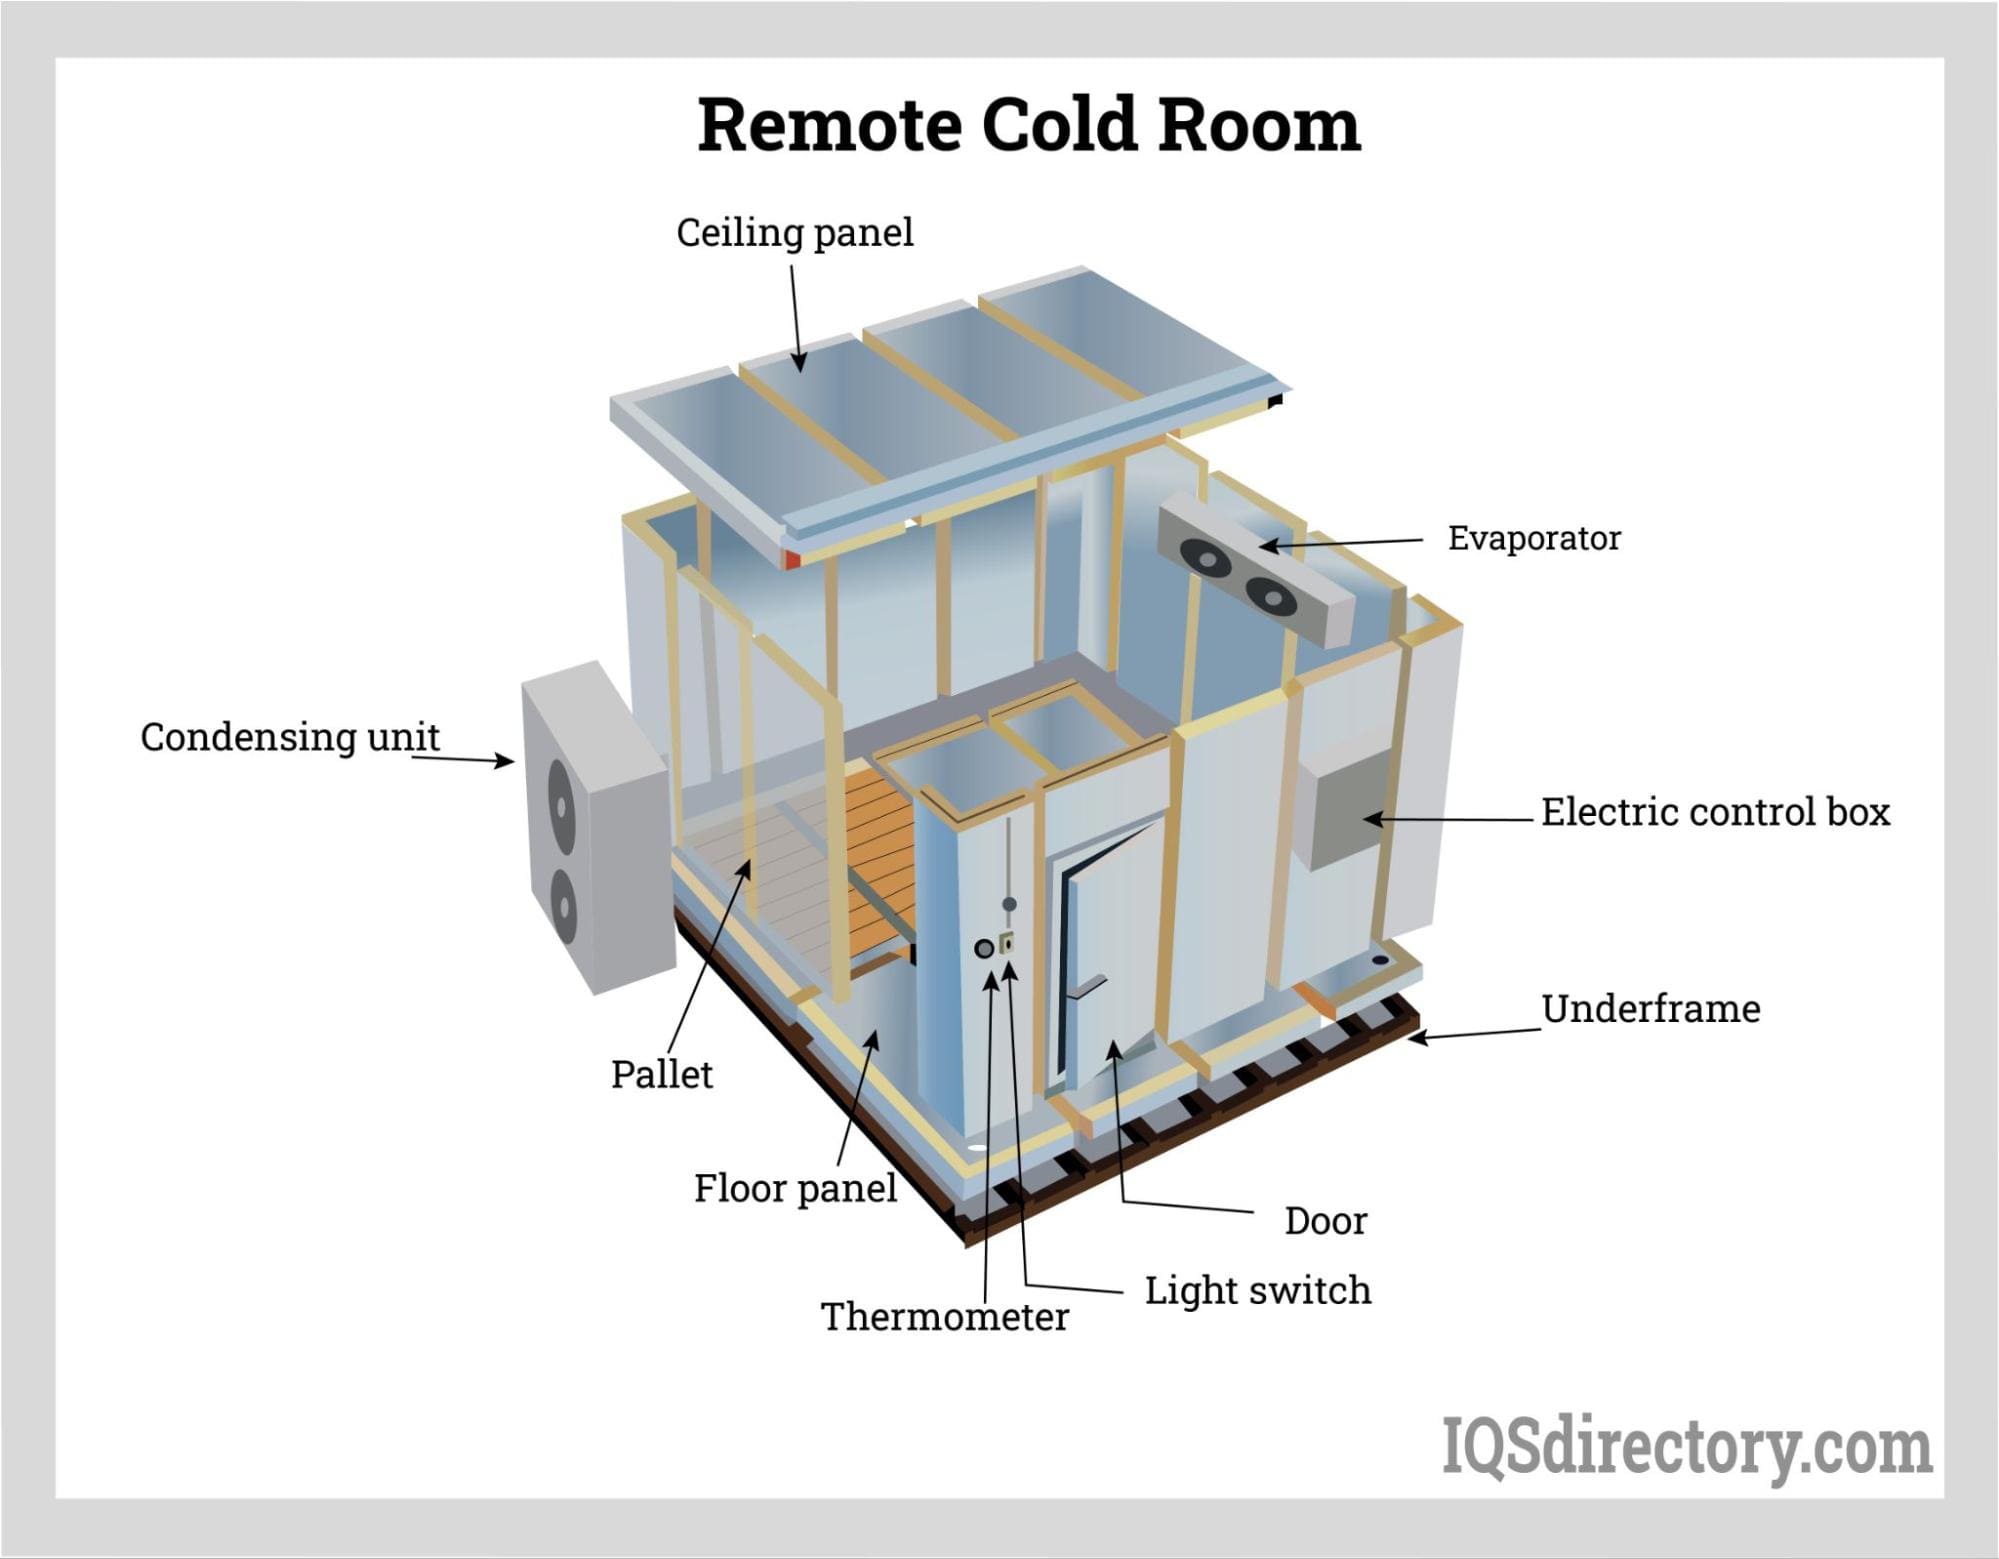 Remote Cold Room